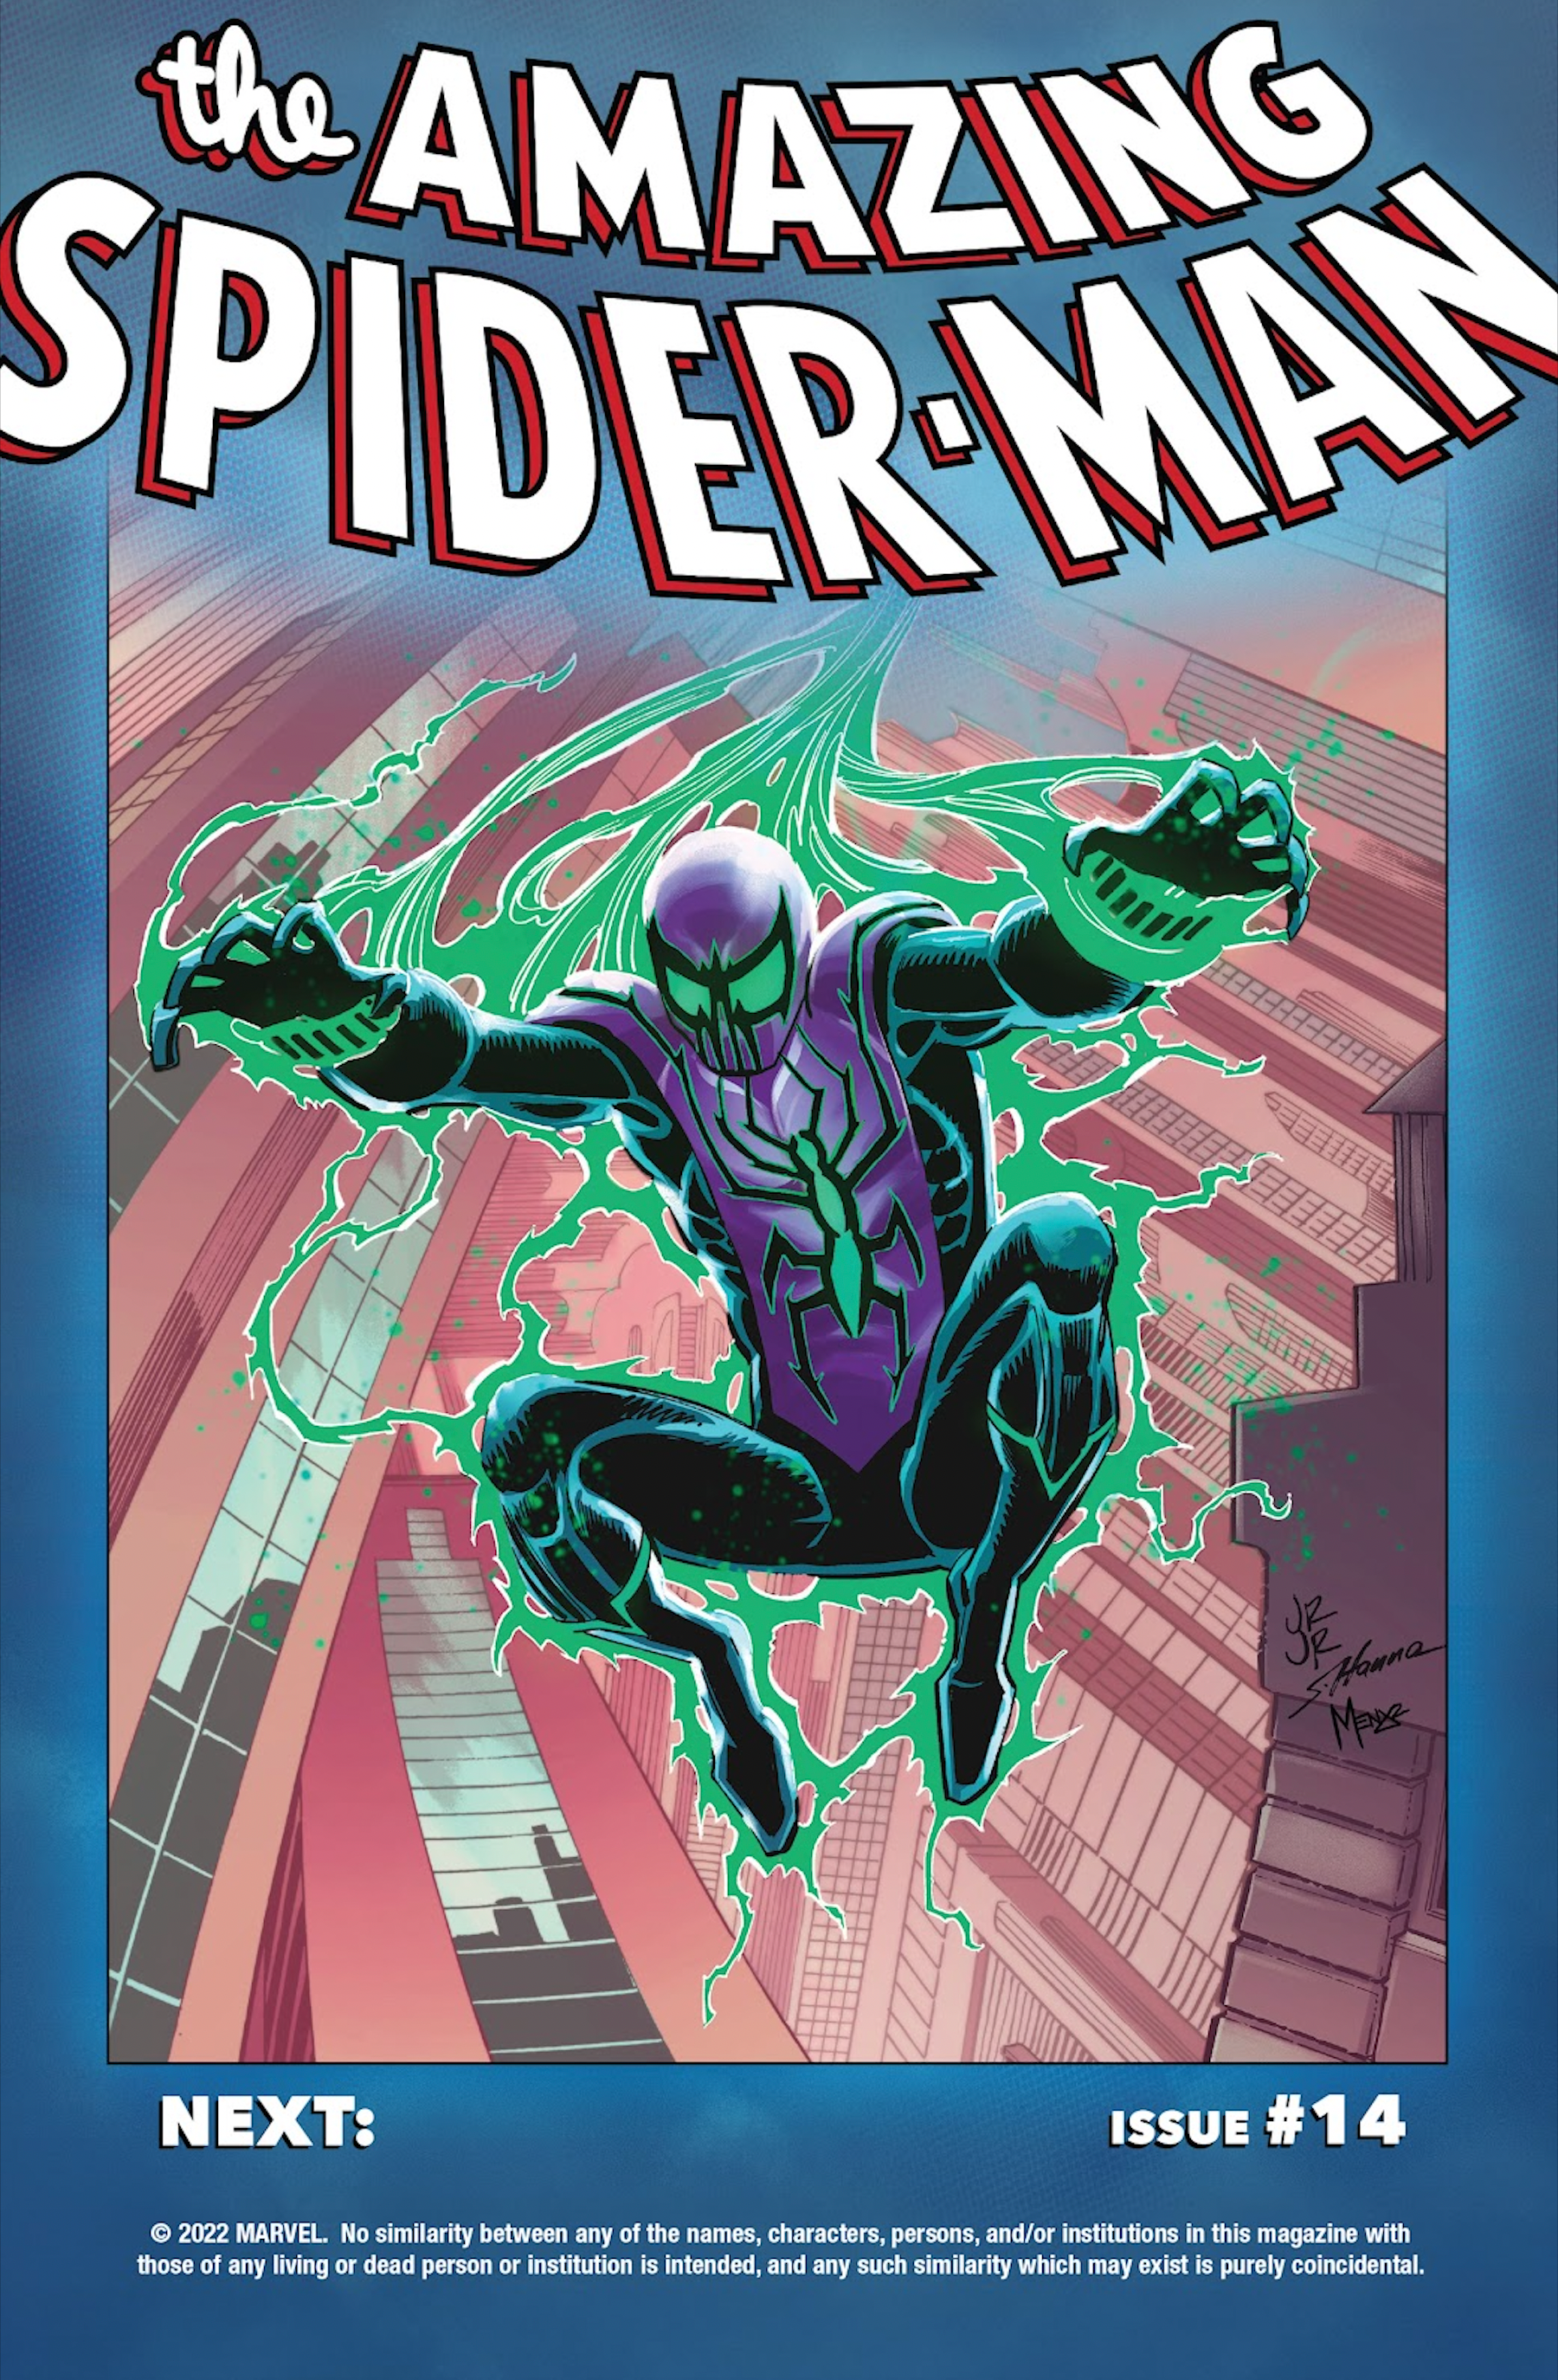 Chasm returns in Amazing Spider-Man